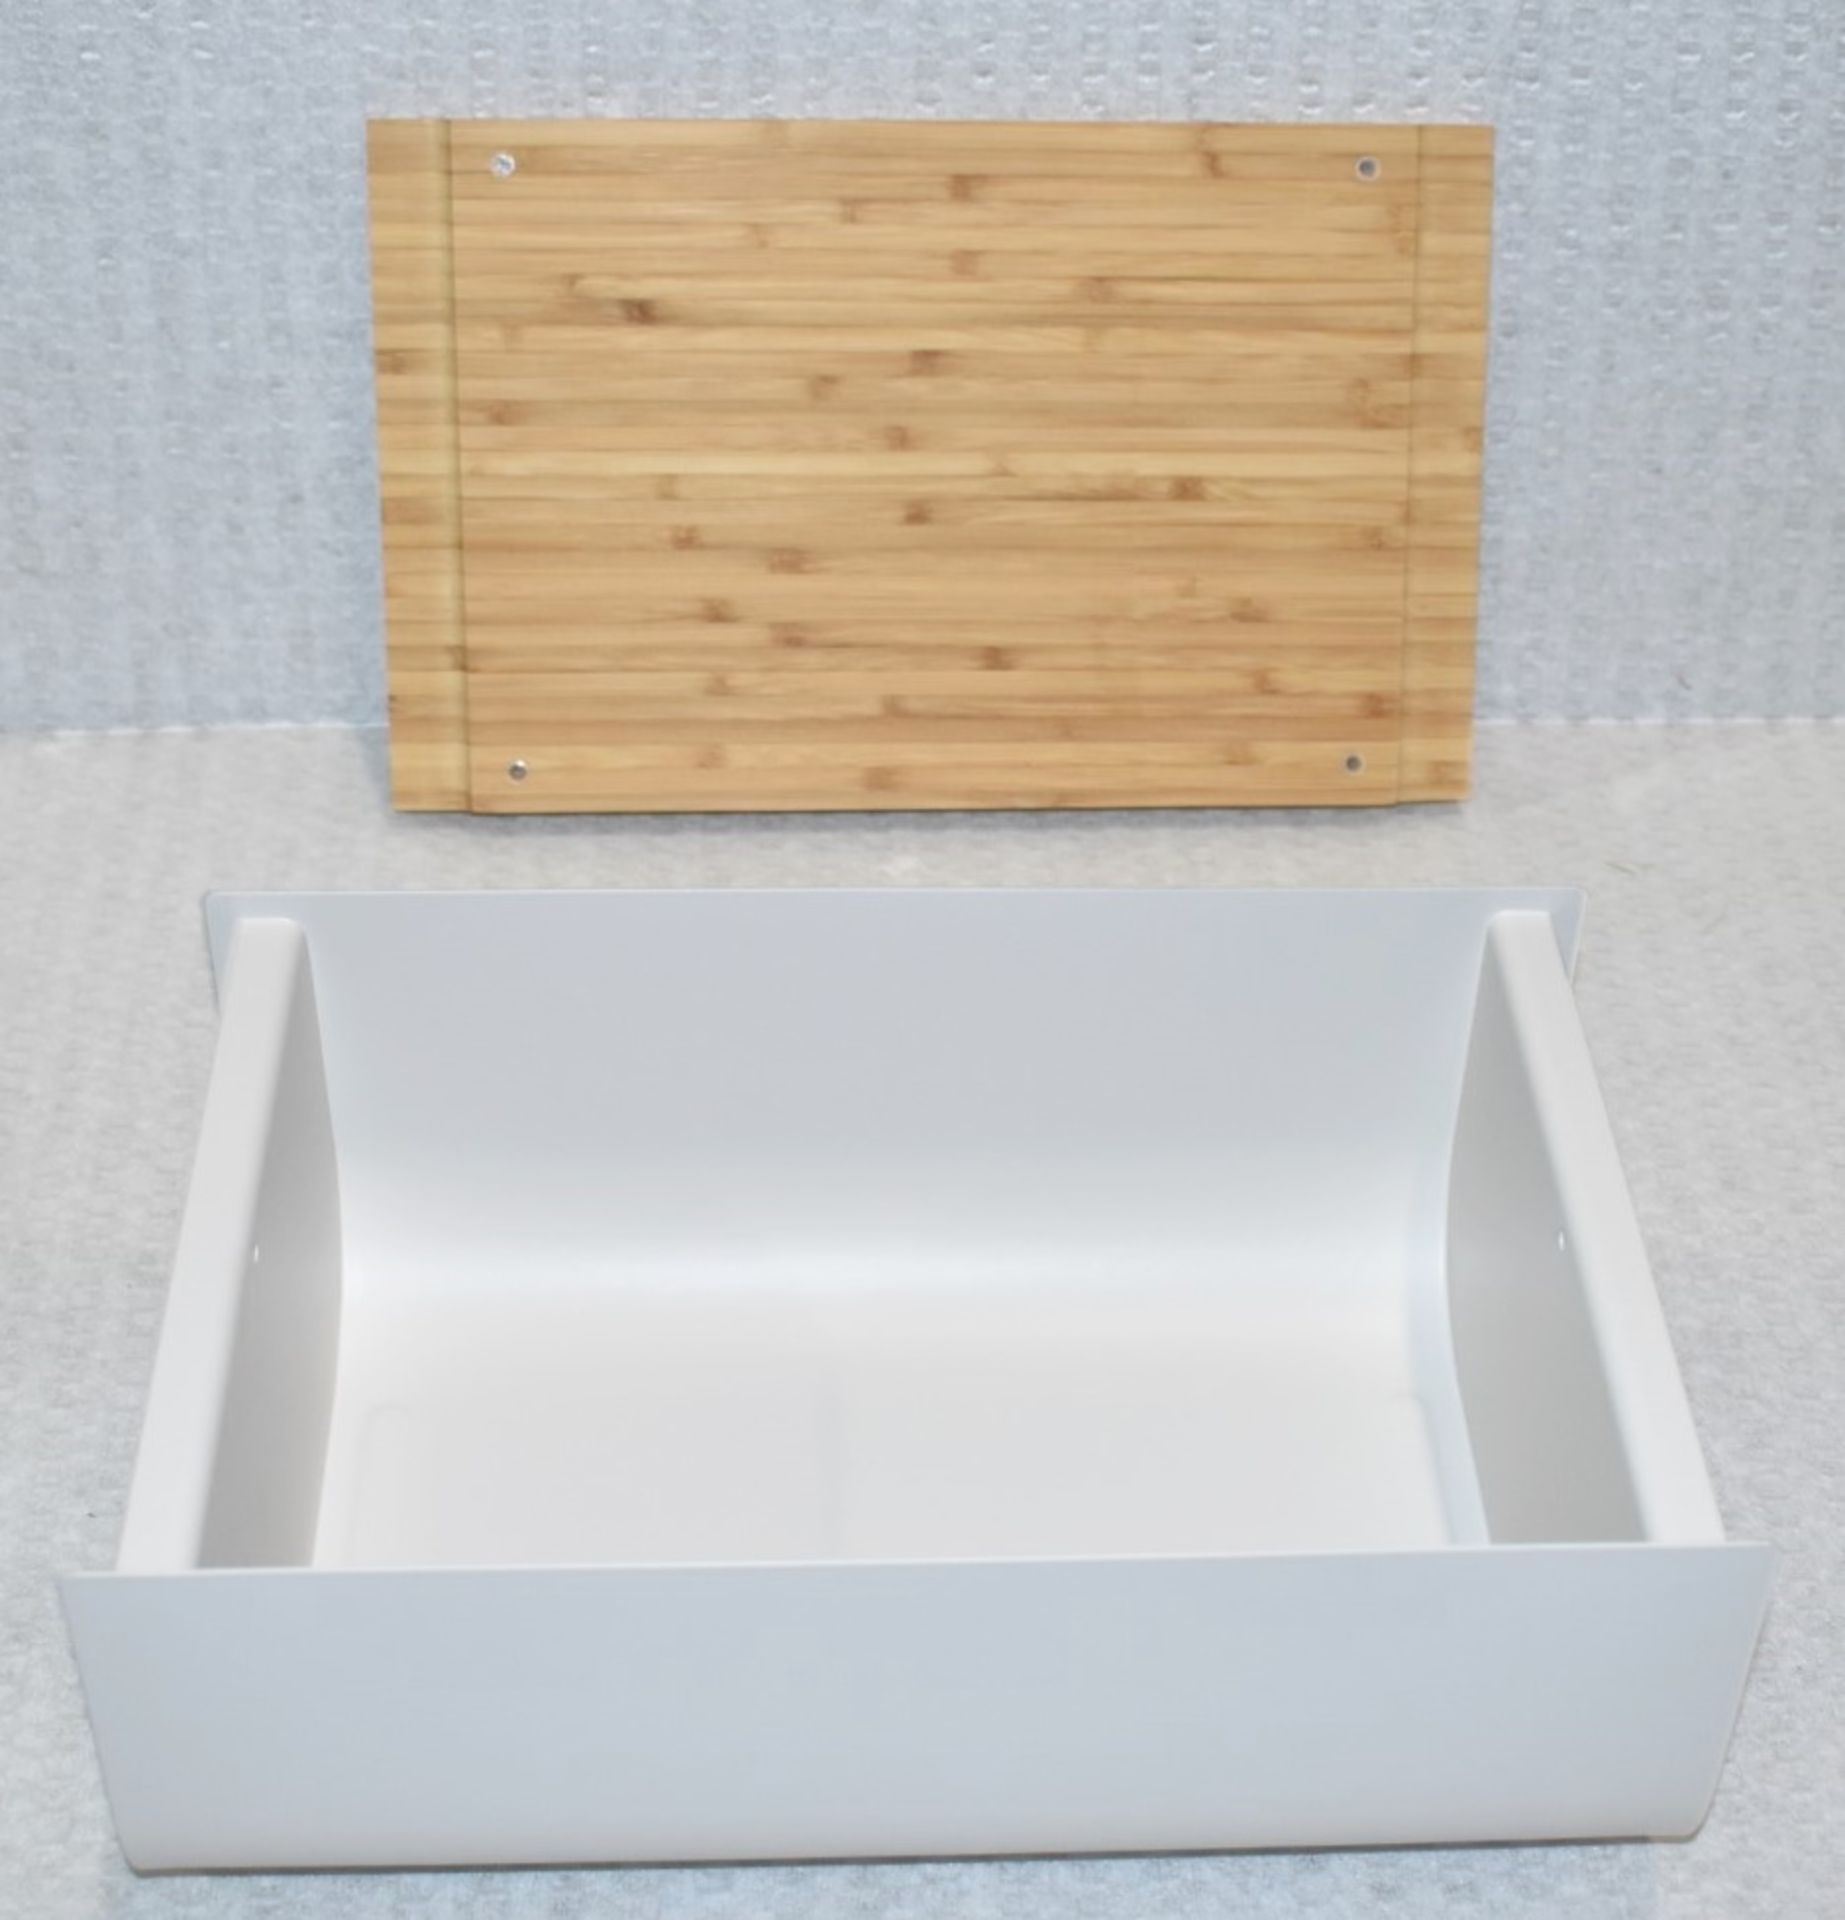 1 x ALESSI 'Mattina' Designer Bread Box (34cm) - £110.00 - Unused Boxed Stock - Image 6 of 7